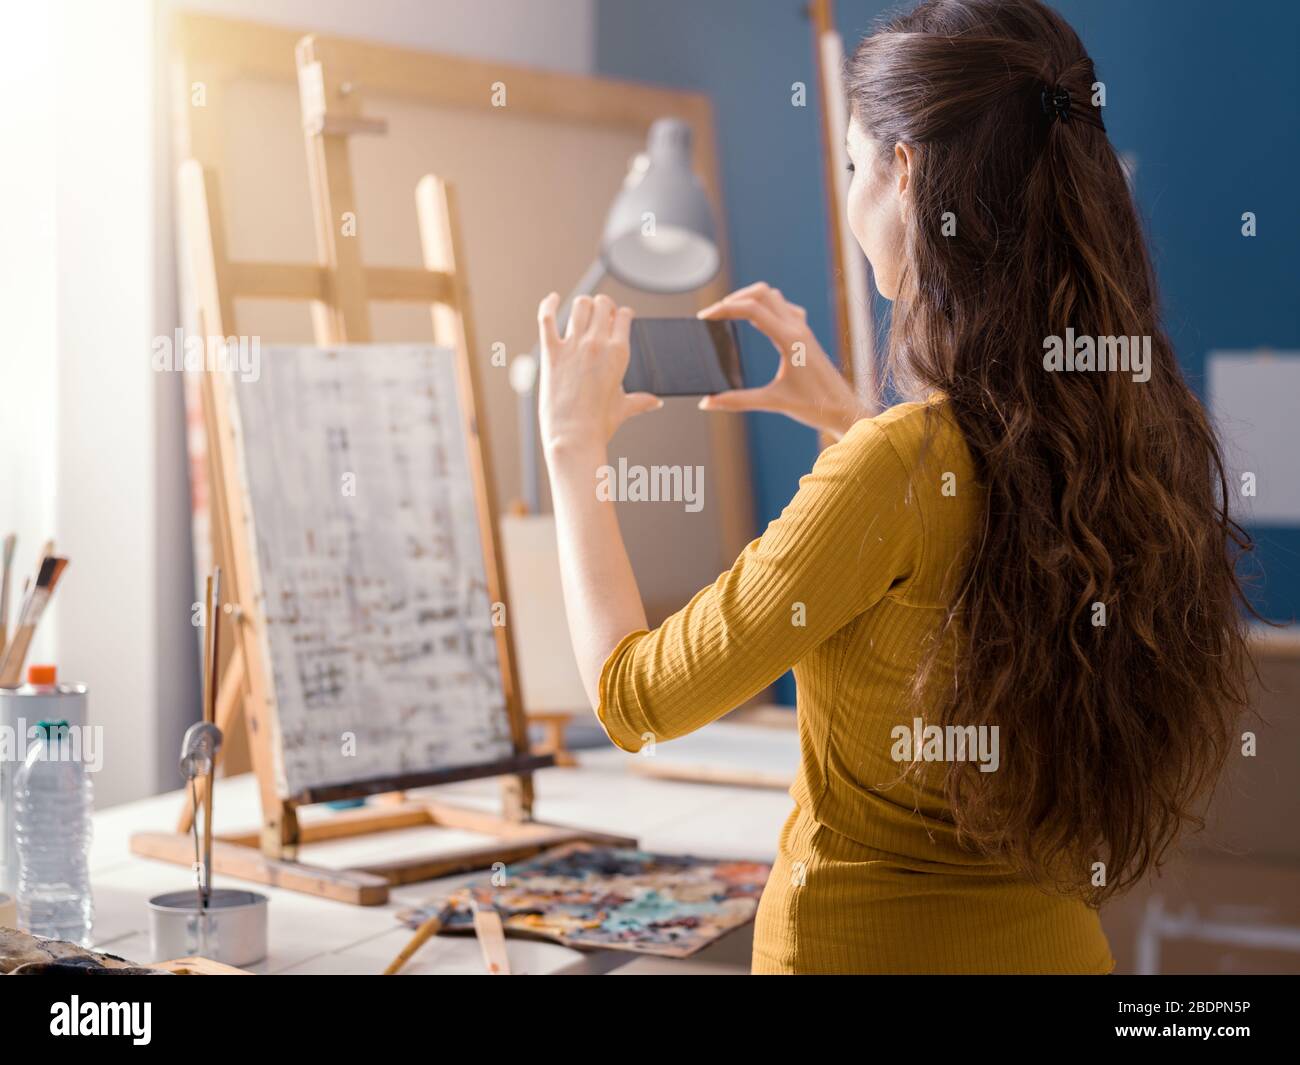 Belle fille prenant une photo de sa peinture à l'aide de son smartphone, technologie et concept d'art Banque D'Images